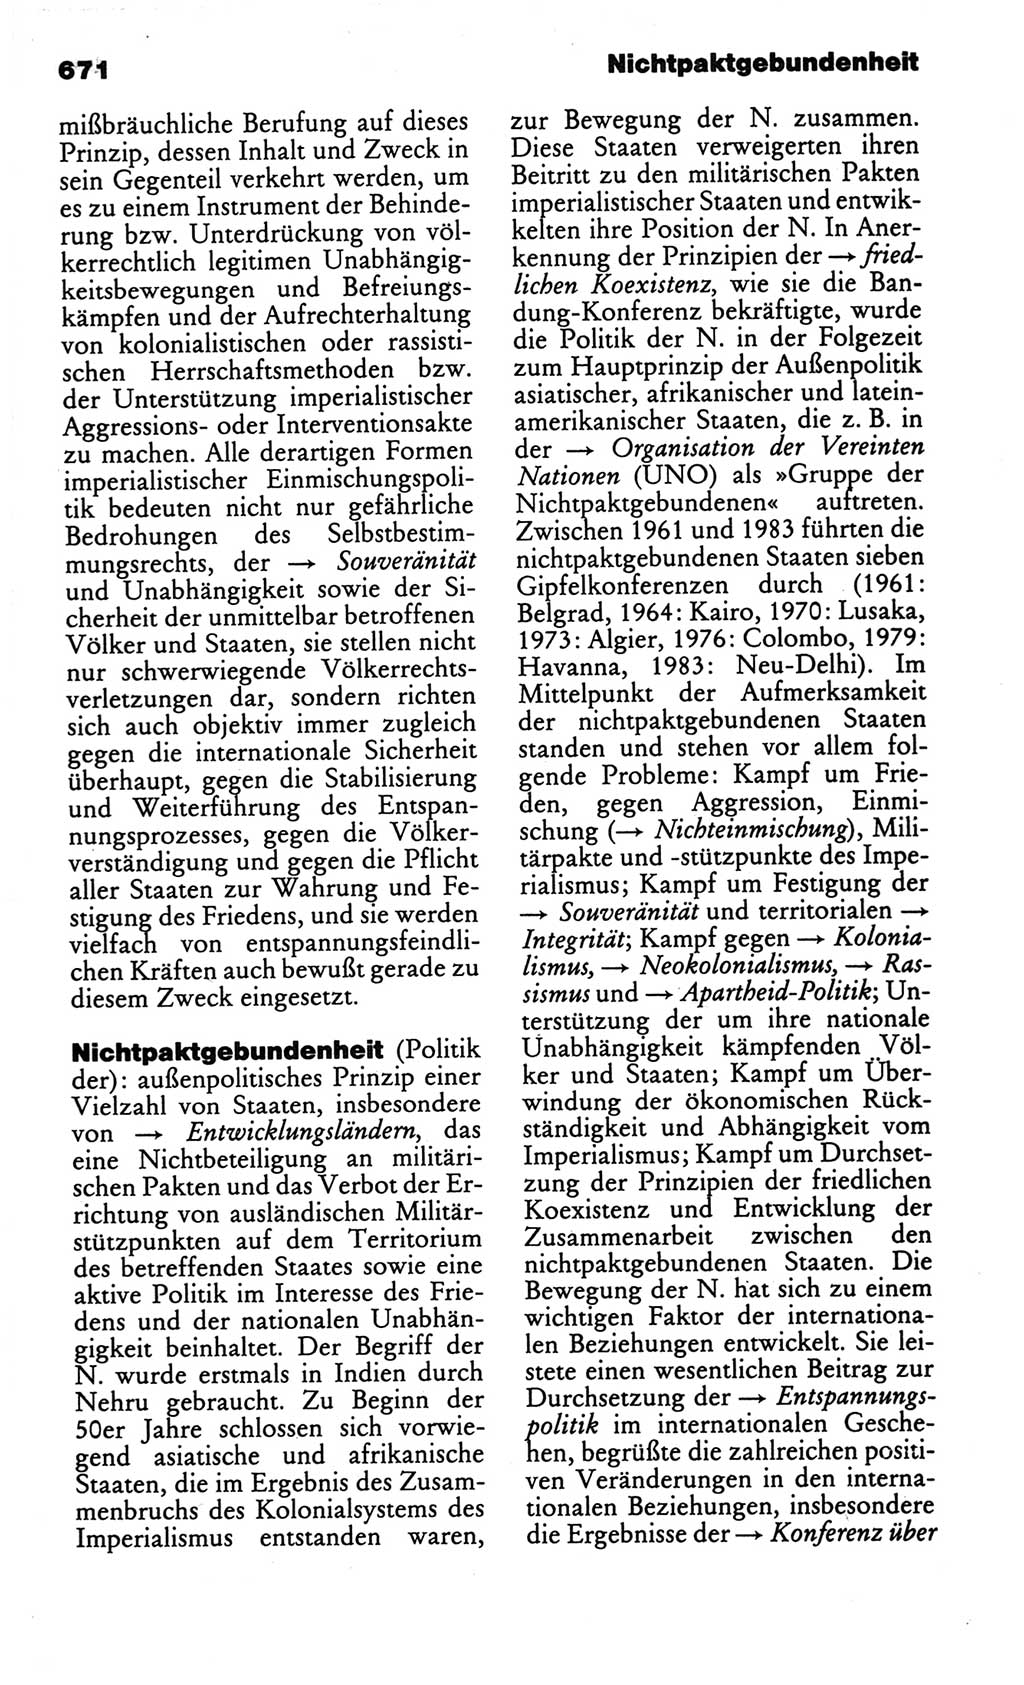 Kleines politisches Wörterbuch [Deutsche Demokratische Republik (DDR)] 1986, Seite 671 (Kl. pol. Wb. DDR 1986, S. 671)